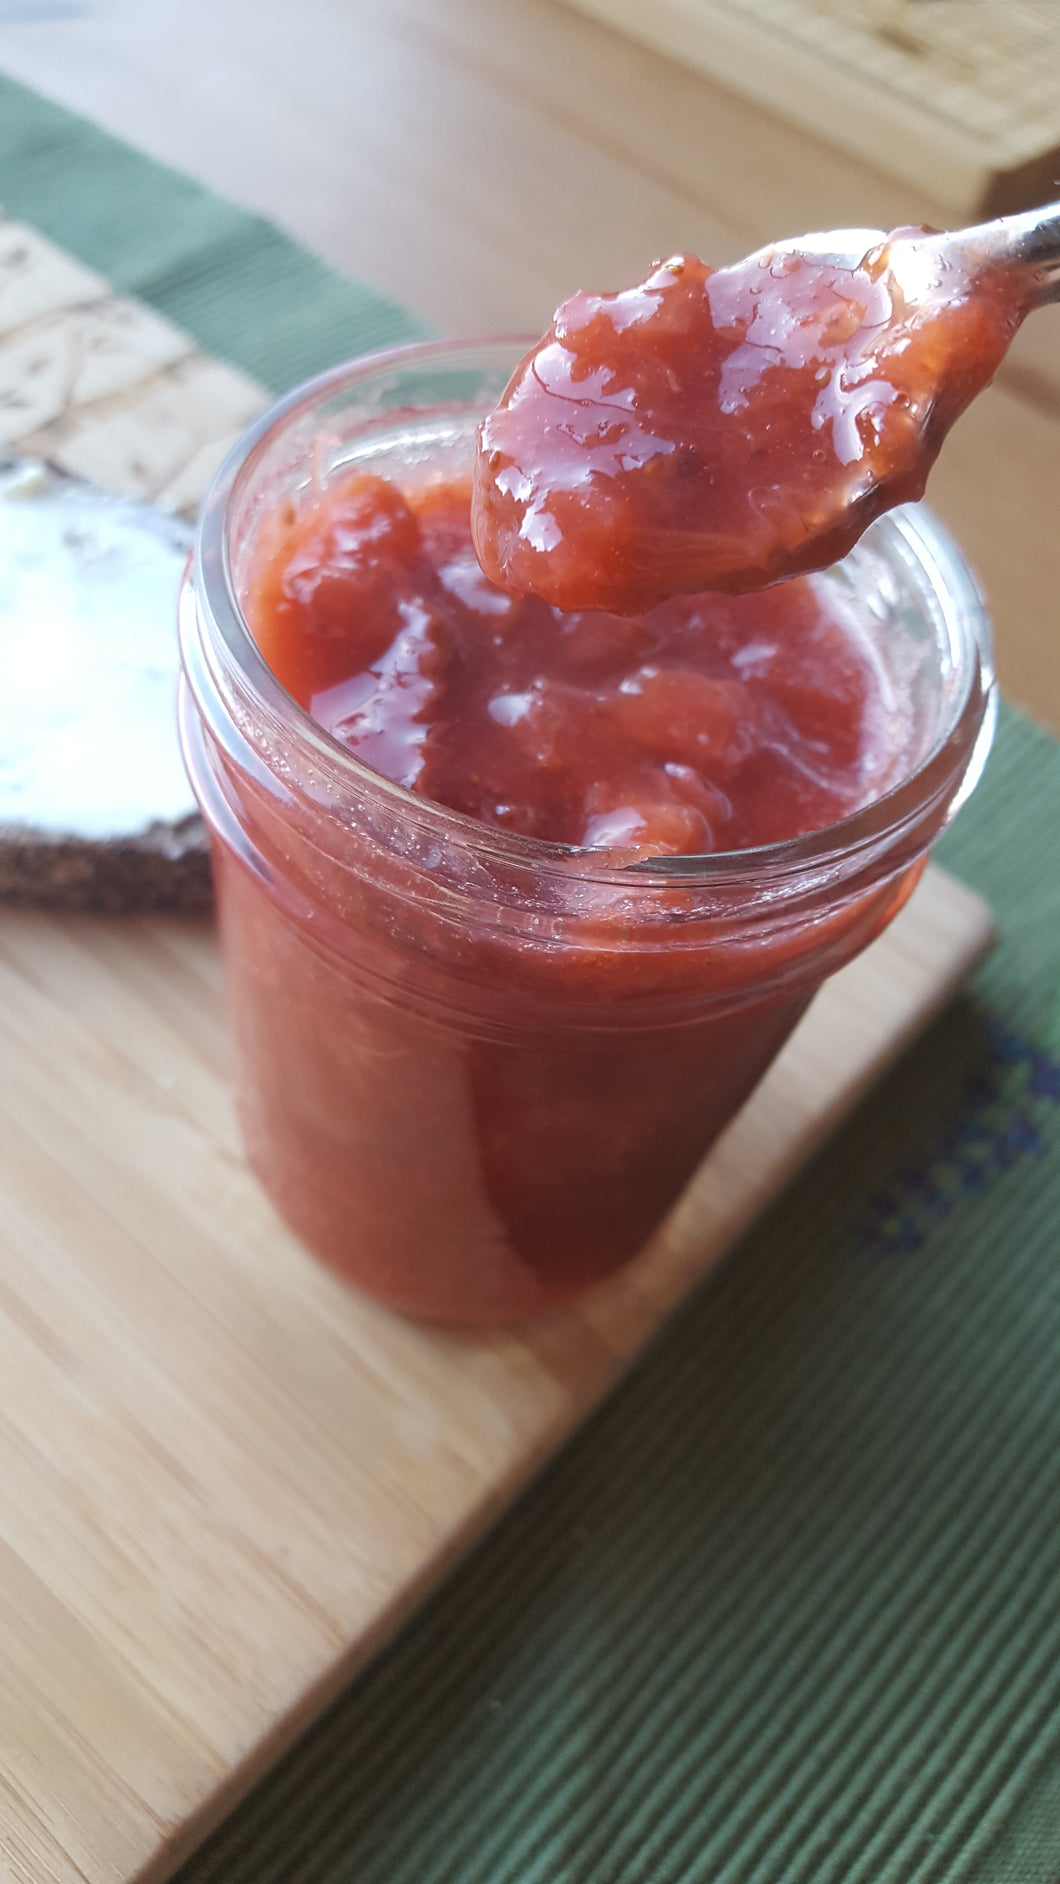 Strawberry Rhubarb Jam - no sugar added!